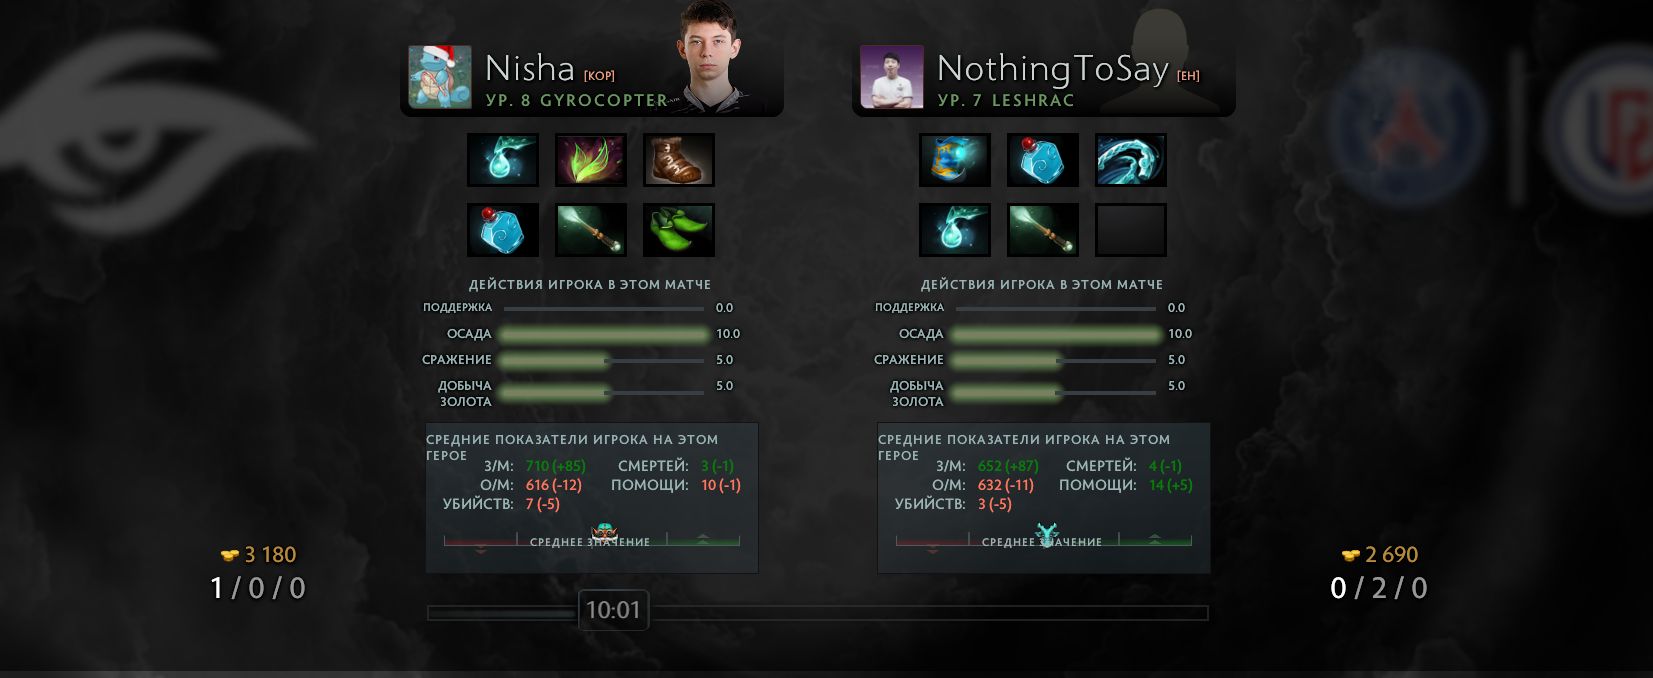 Сравнение Nisha и NothingToSay 